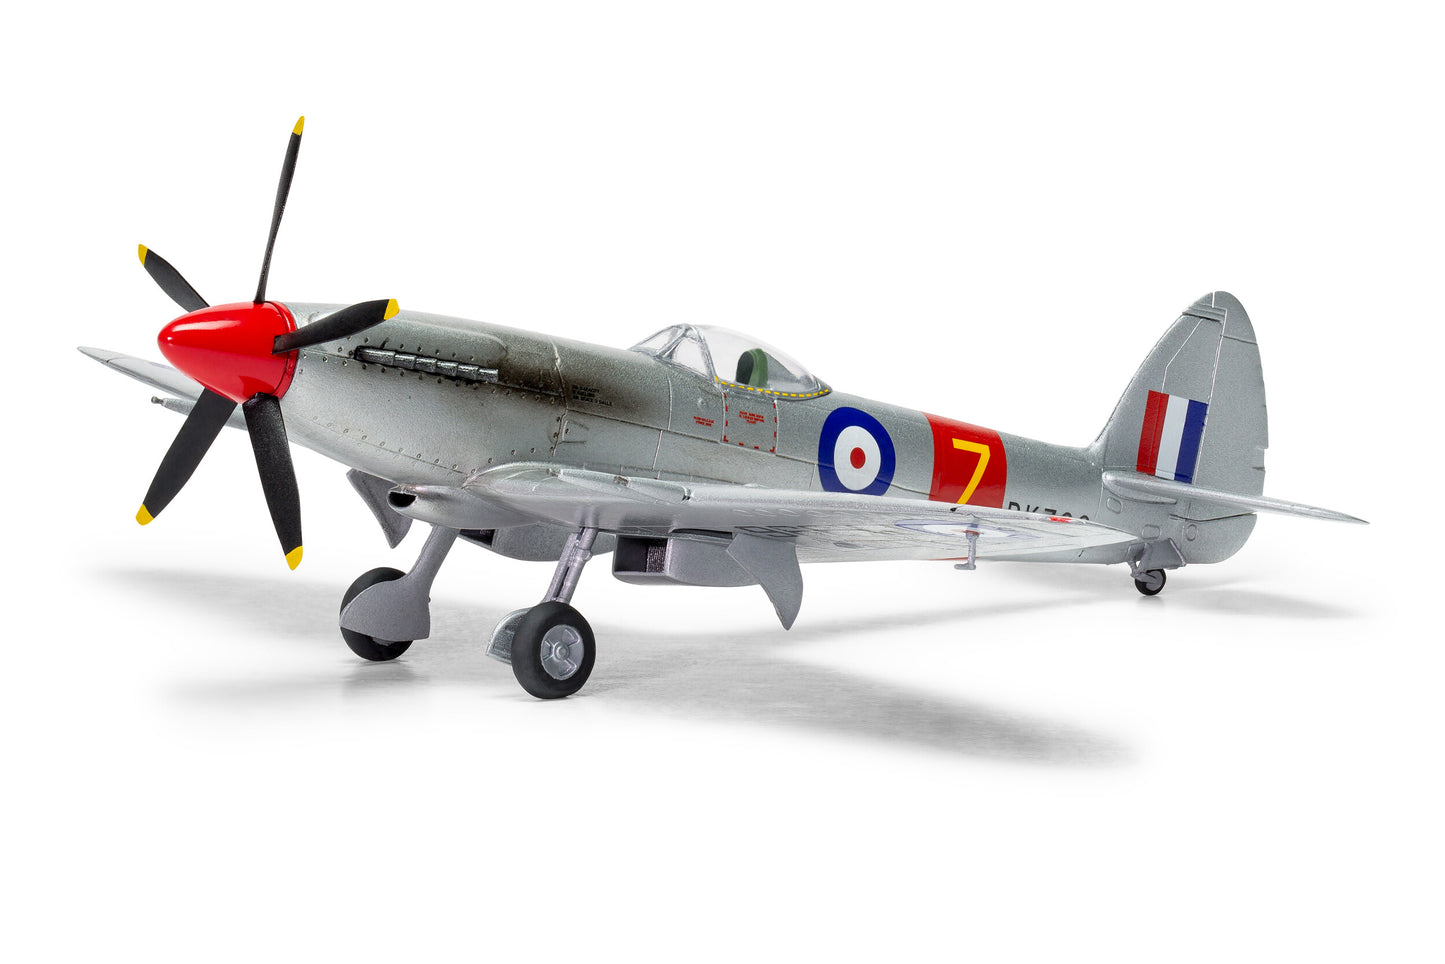 Airfix 1/72nd Scale Supermarine Spitfire F.22